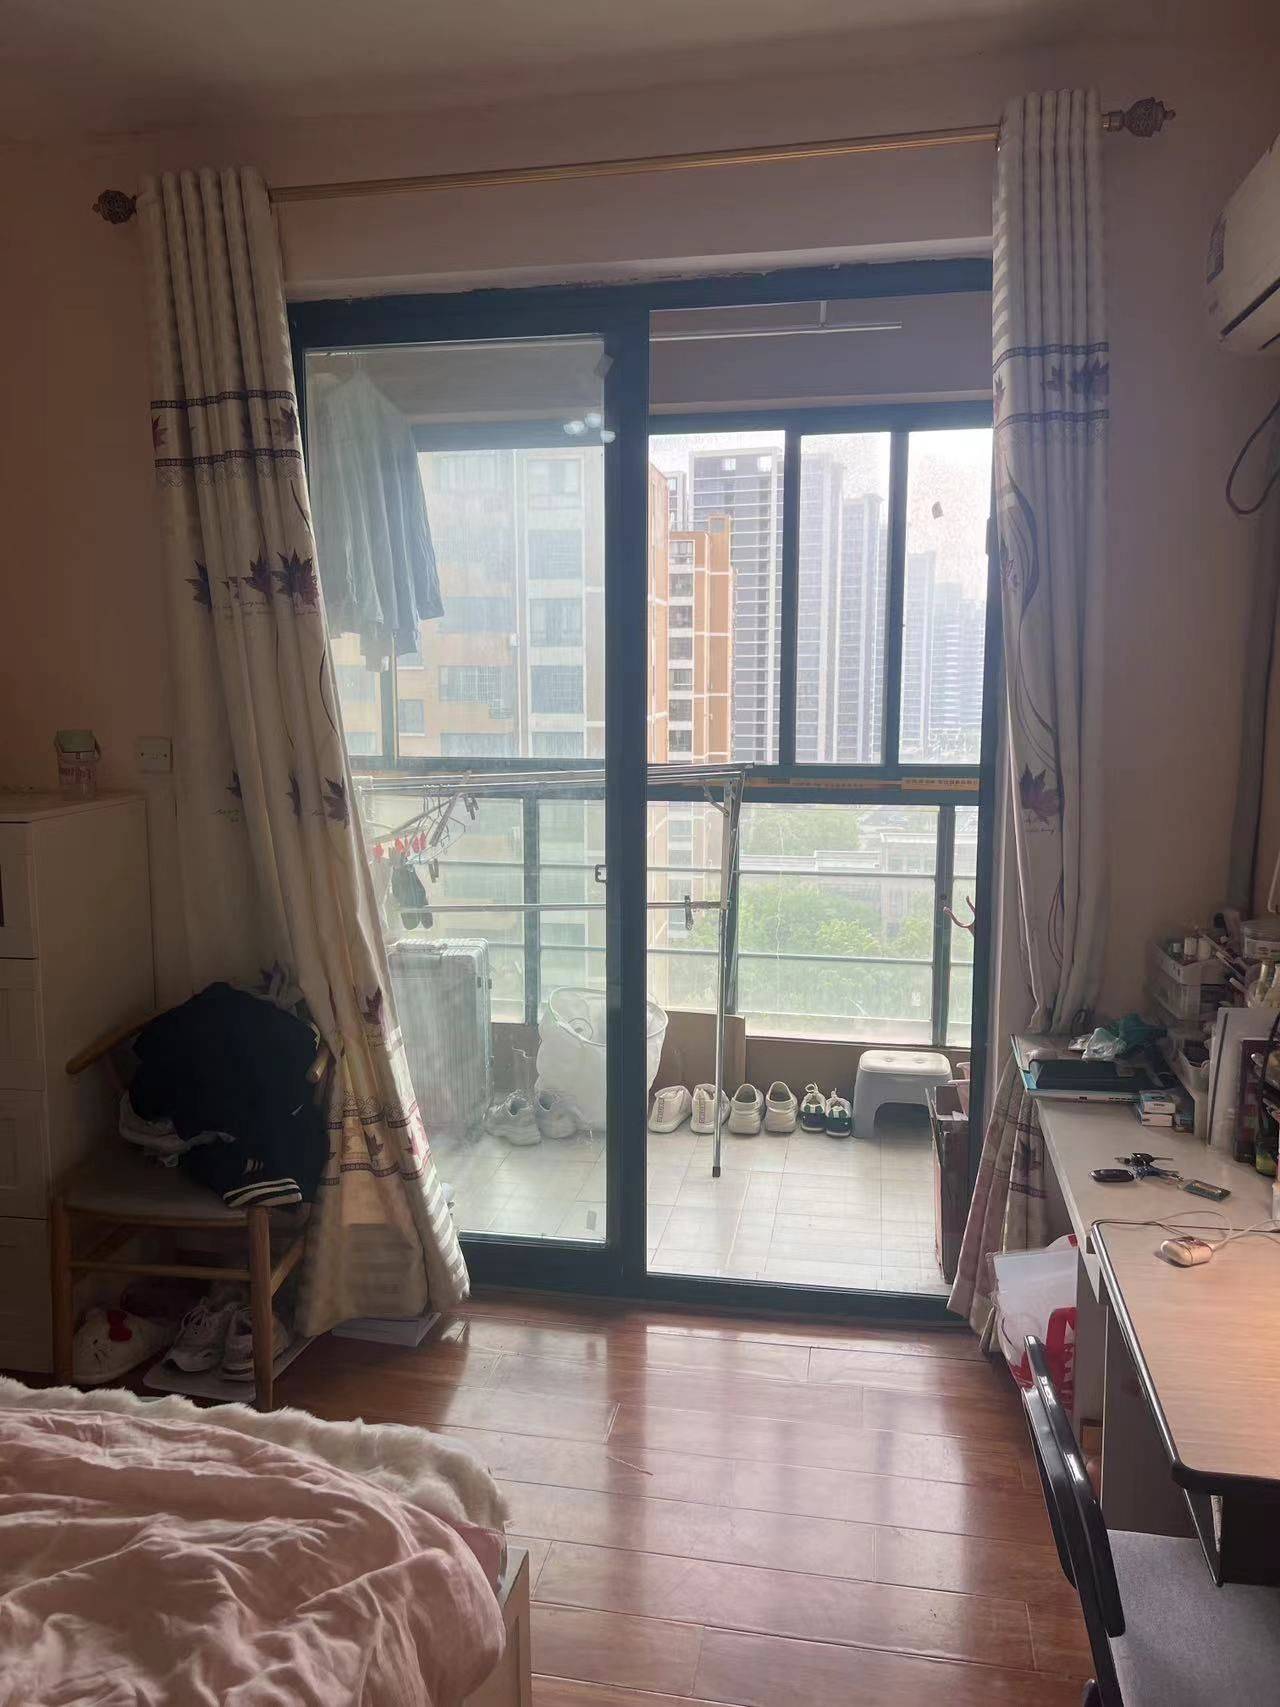 Hangzhou-Xiaoshan-Cozy Home,No Gender Limit,Pet Friendly